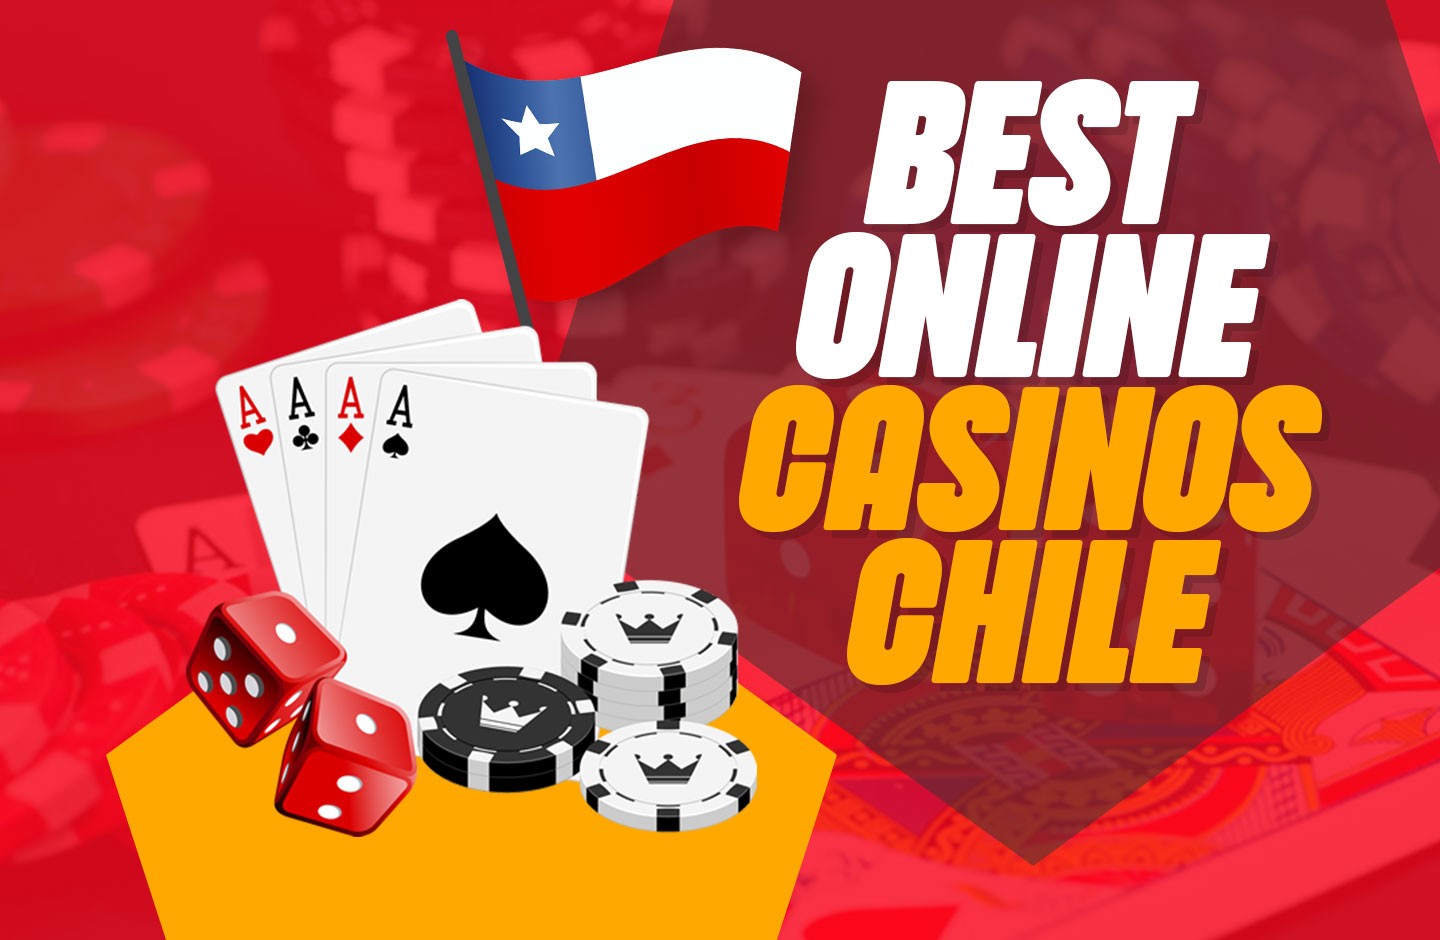 5 lecciones que puede aprender de Bing sobre mejores casinos online